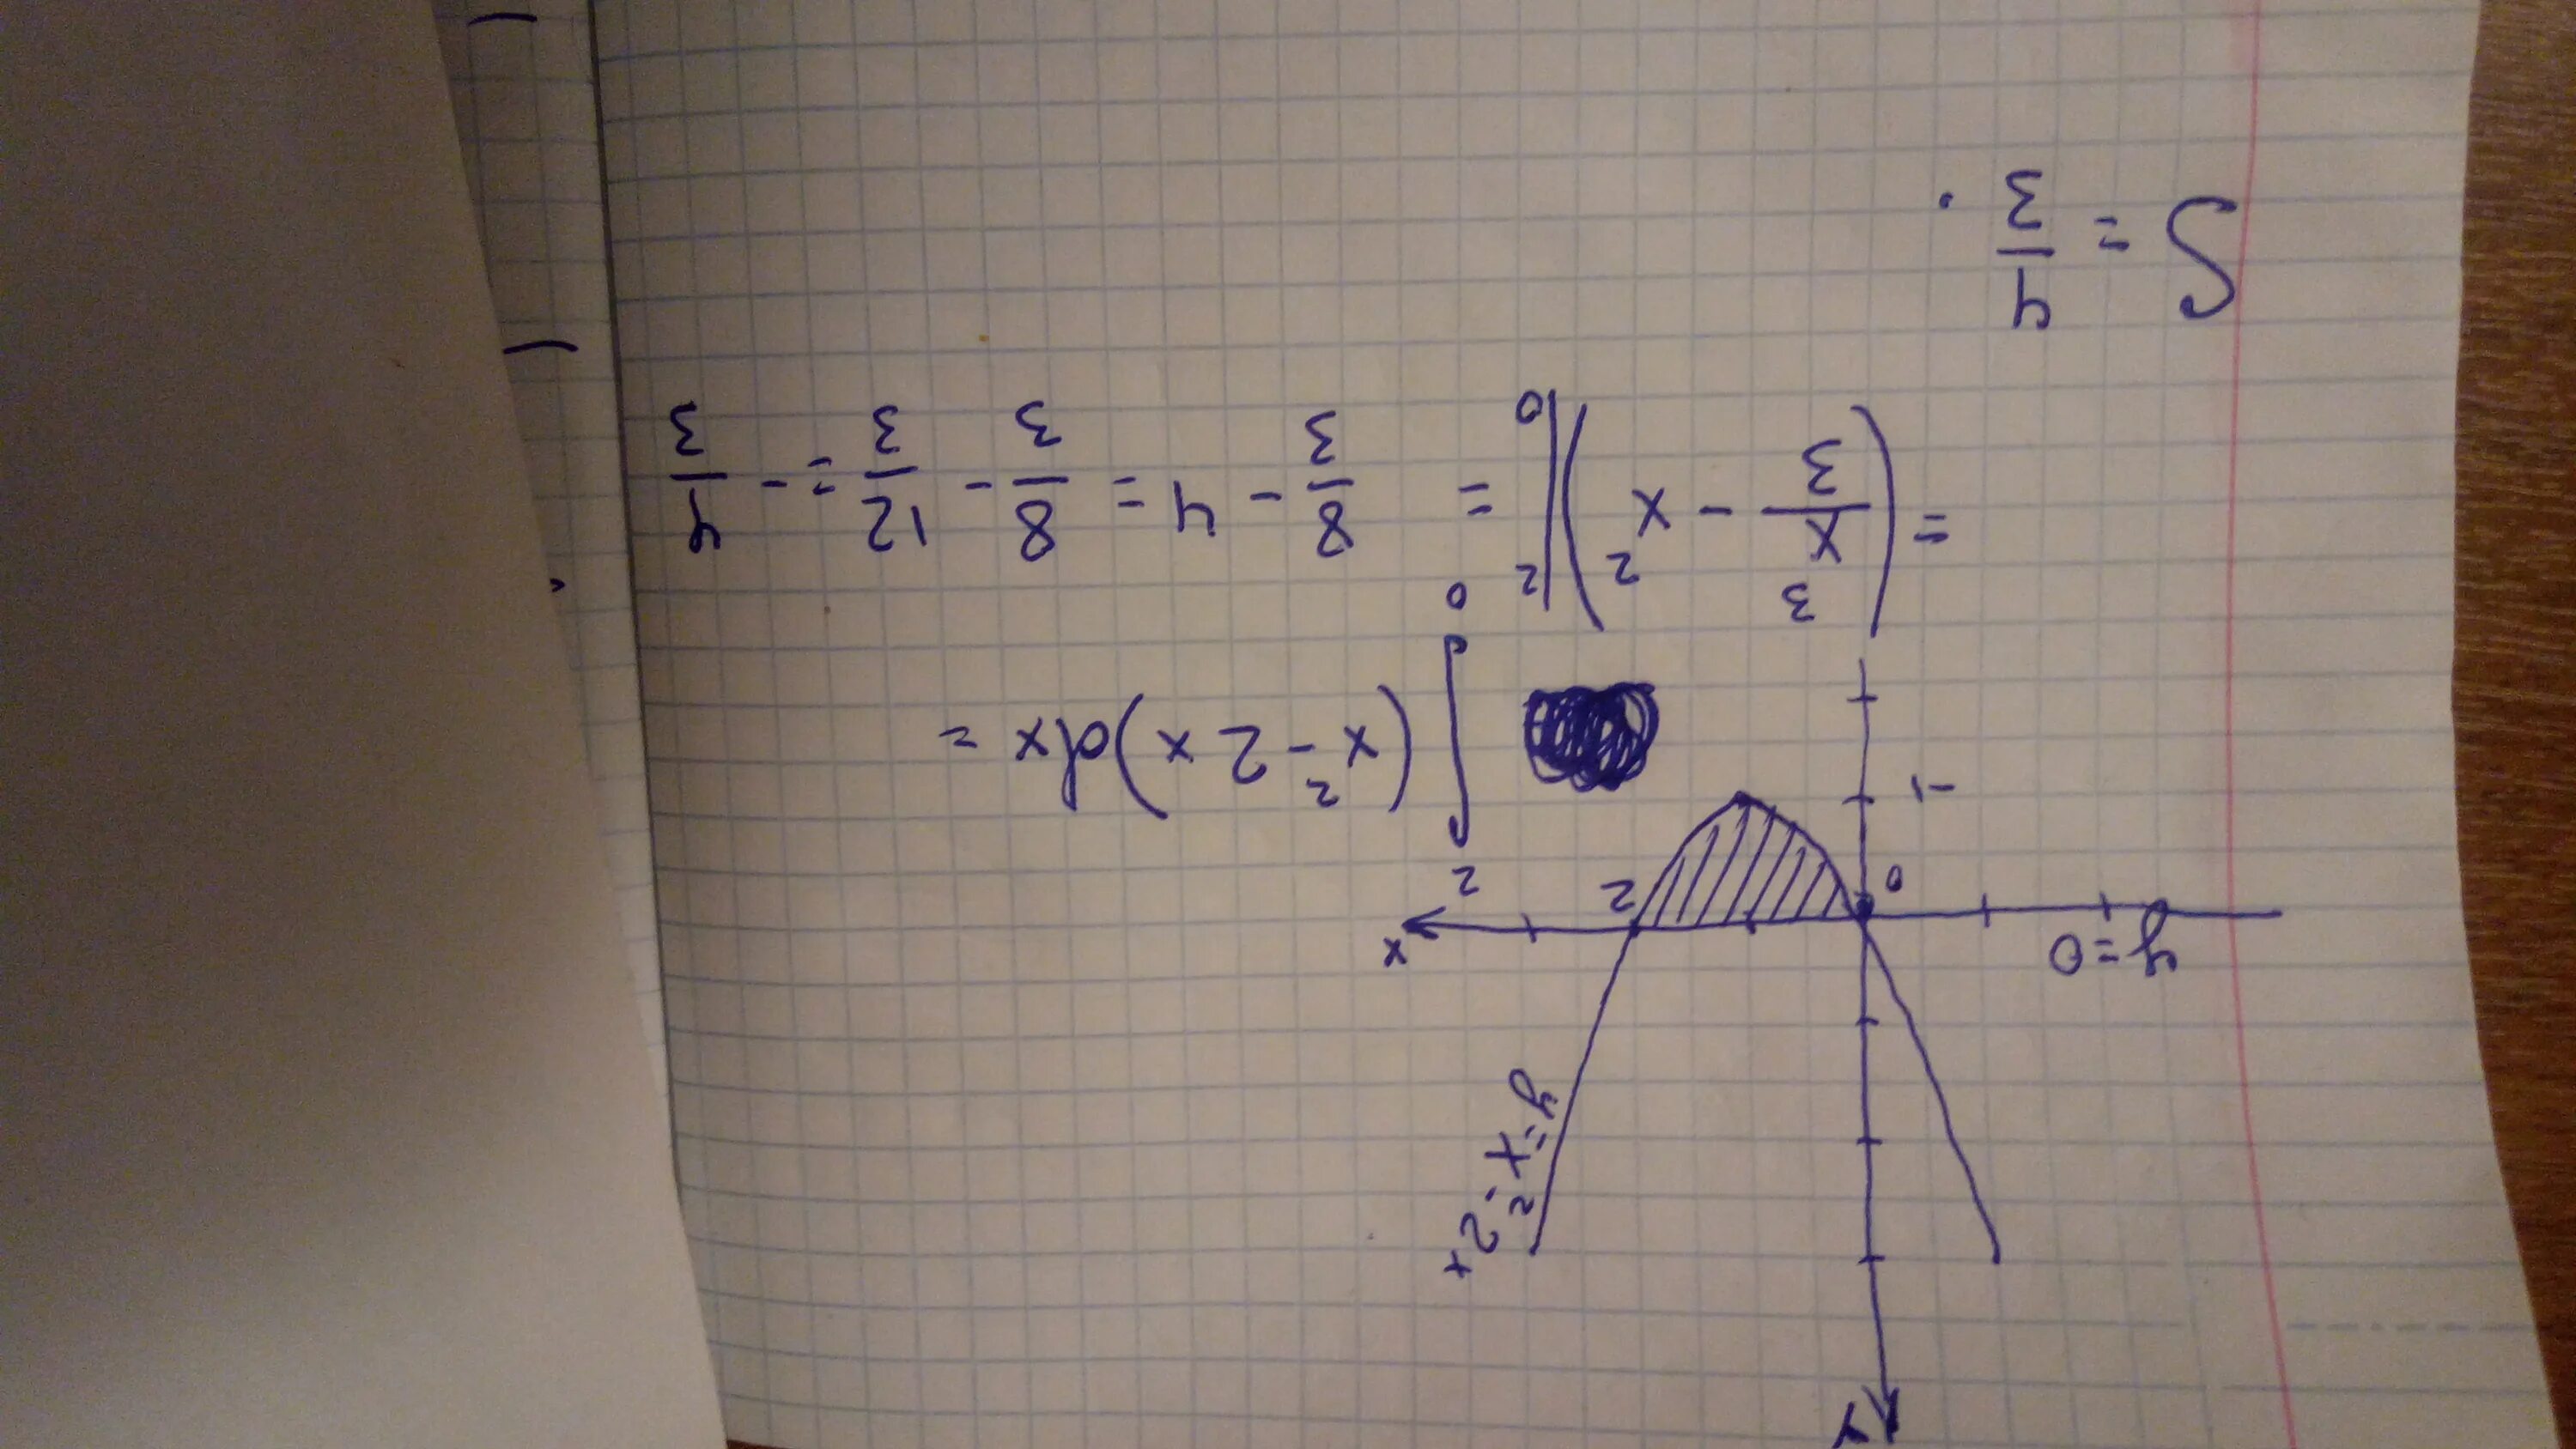 Вычислите площадь фигуры ограниченной линиями y=x^2-2x-2 y=x-2. Вычислить площадь фигуры ограниченной линиями y x2. Y = x2 площадь фигуры. Вычислите площадь фигуры, ограниченной линиями y=x2+2 , y=0, x=0, x=2.